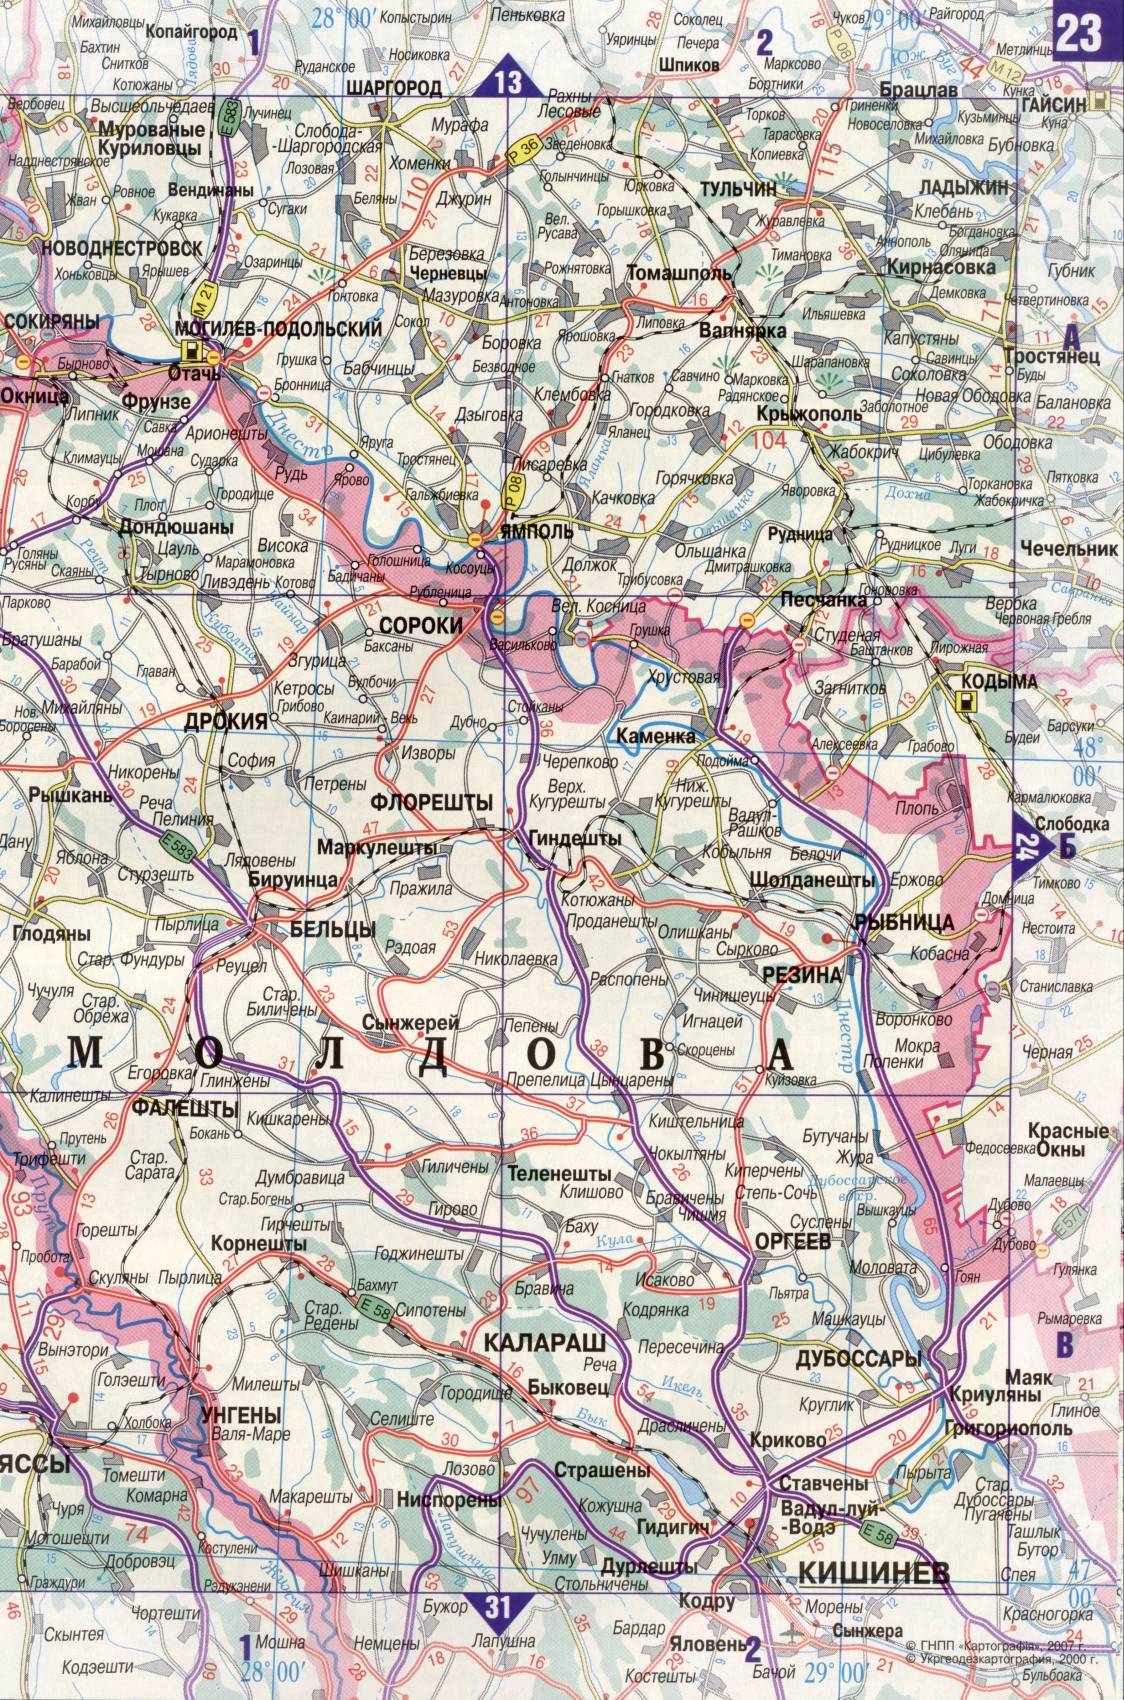 Karte der Ukraine. Detaillierte Straßenkarte der Ukraine avtomobilnog Satin. kostenlos herunterladen, D2